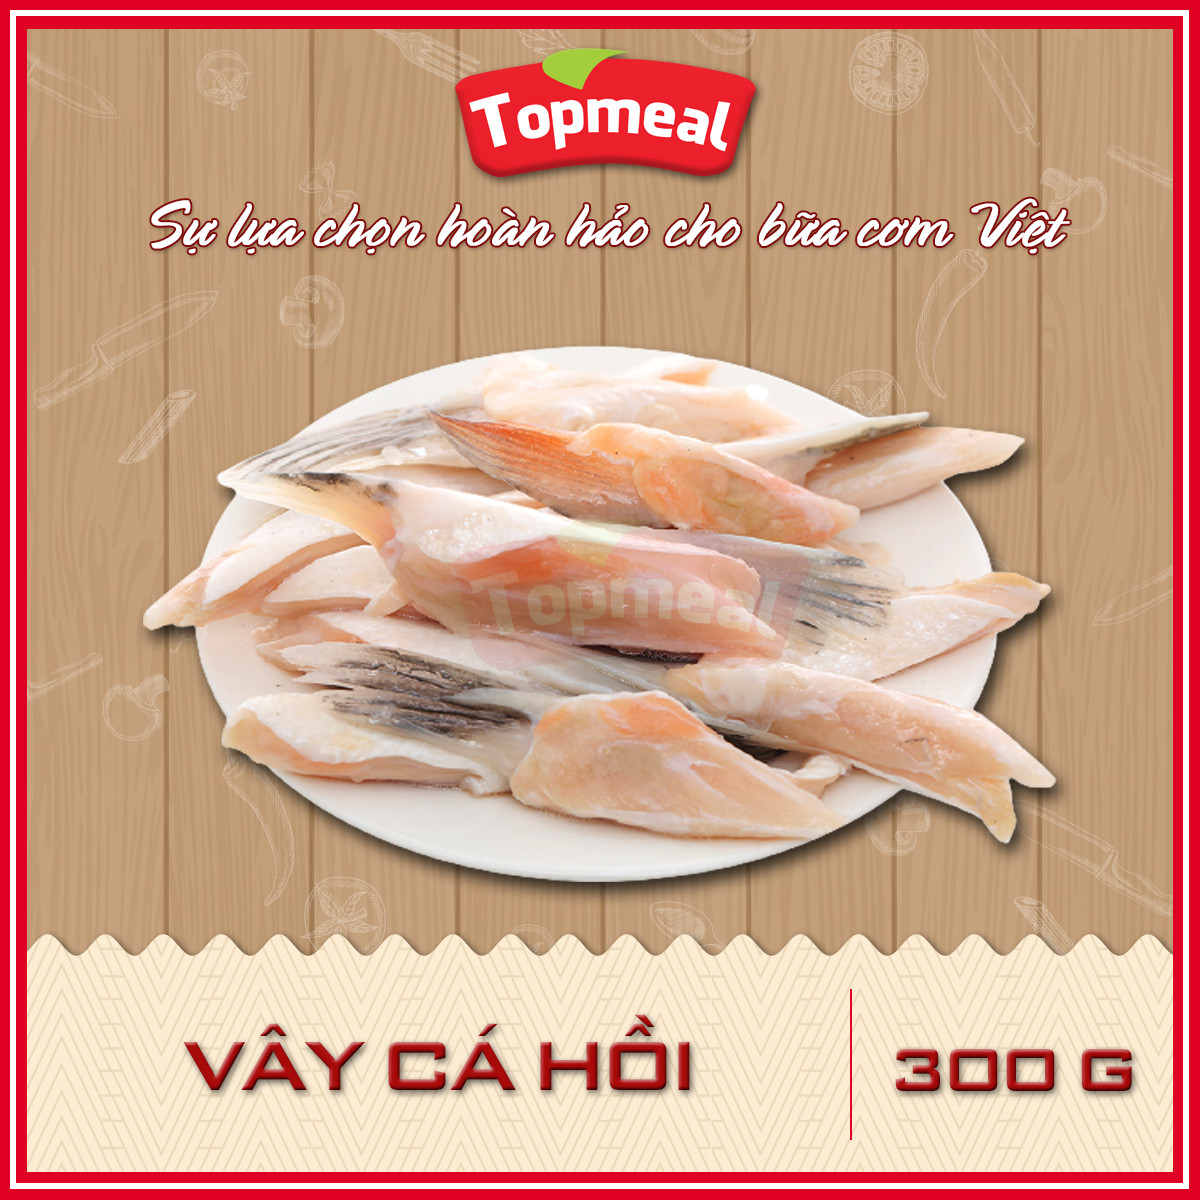 HCM - Vây cá hồi (300g) - Thích hợp với các món chiên giòn, kho, nướng, nấu lẩu - [Giao nhanh TPHCM]